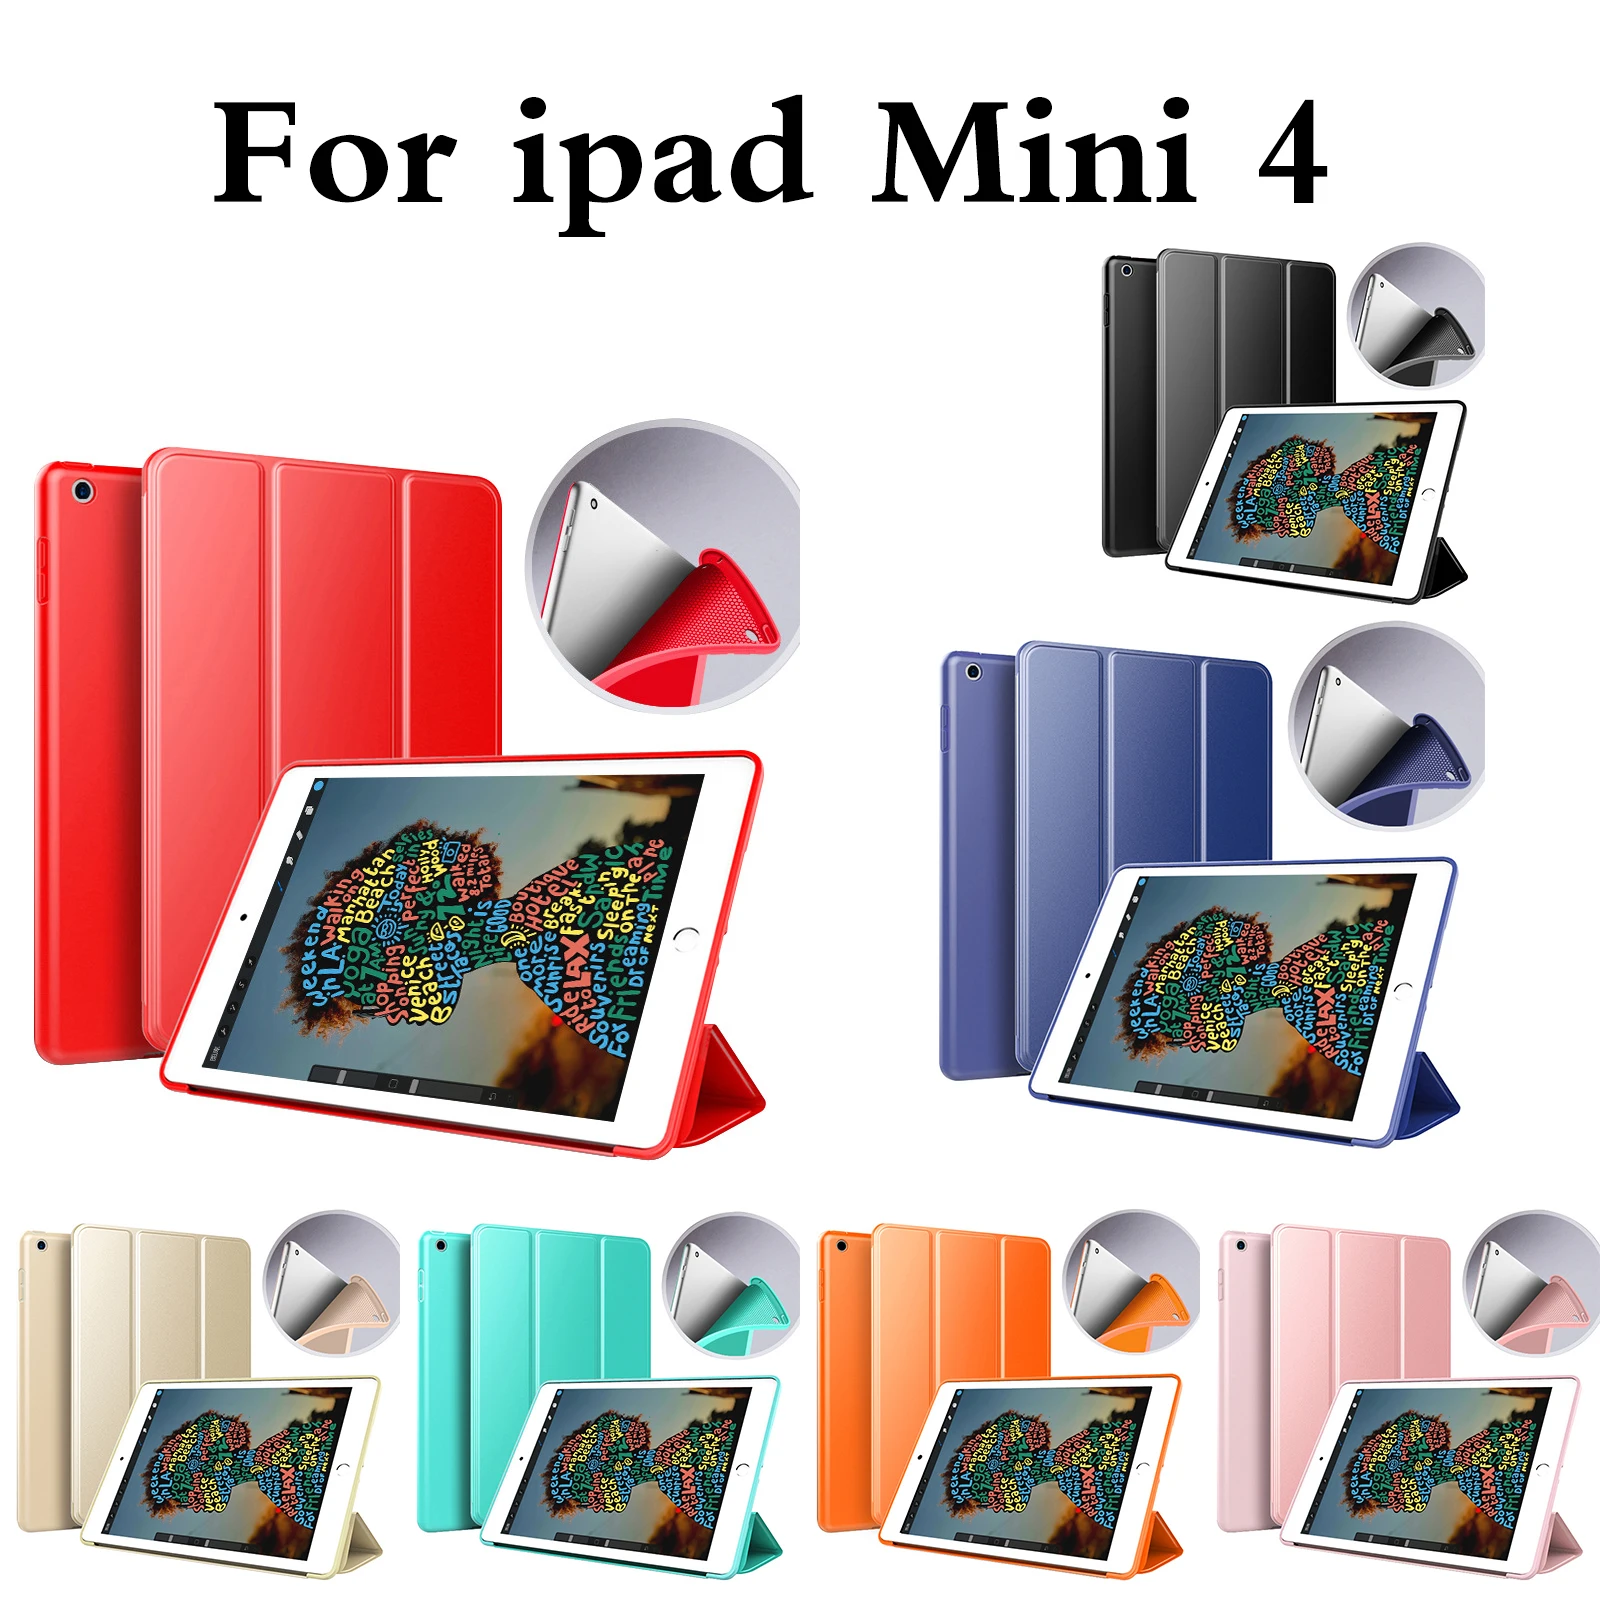 Для Apple iPad mini 4 чехол из искусственной кожи, ультра тонкий силиконовый мягкий чехол для iPad mini 4 с функцией автоматического сна+ защита экрана